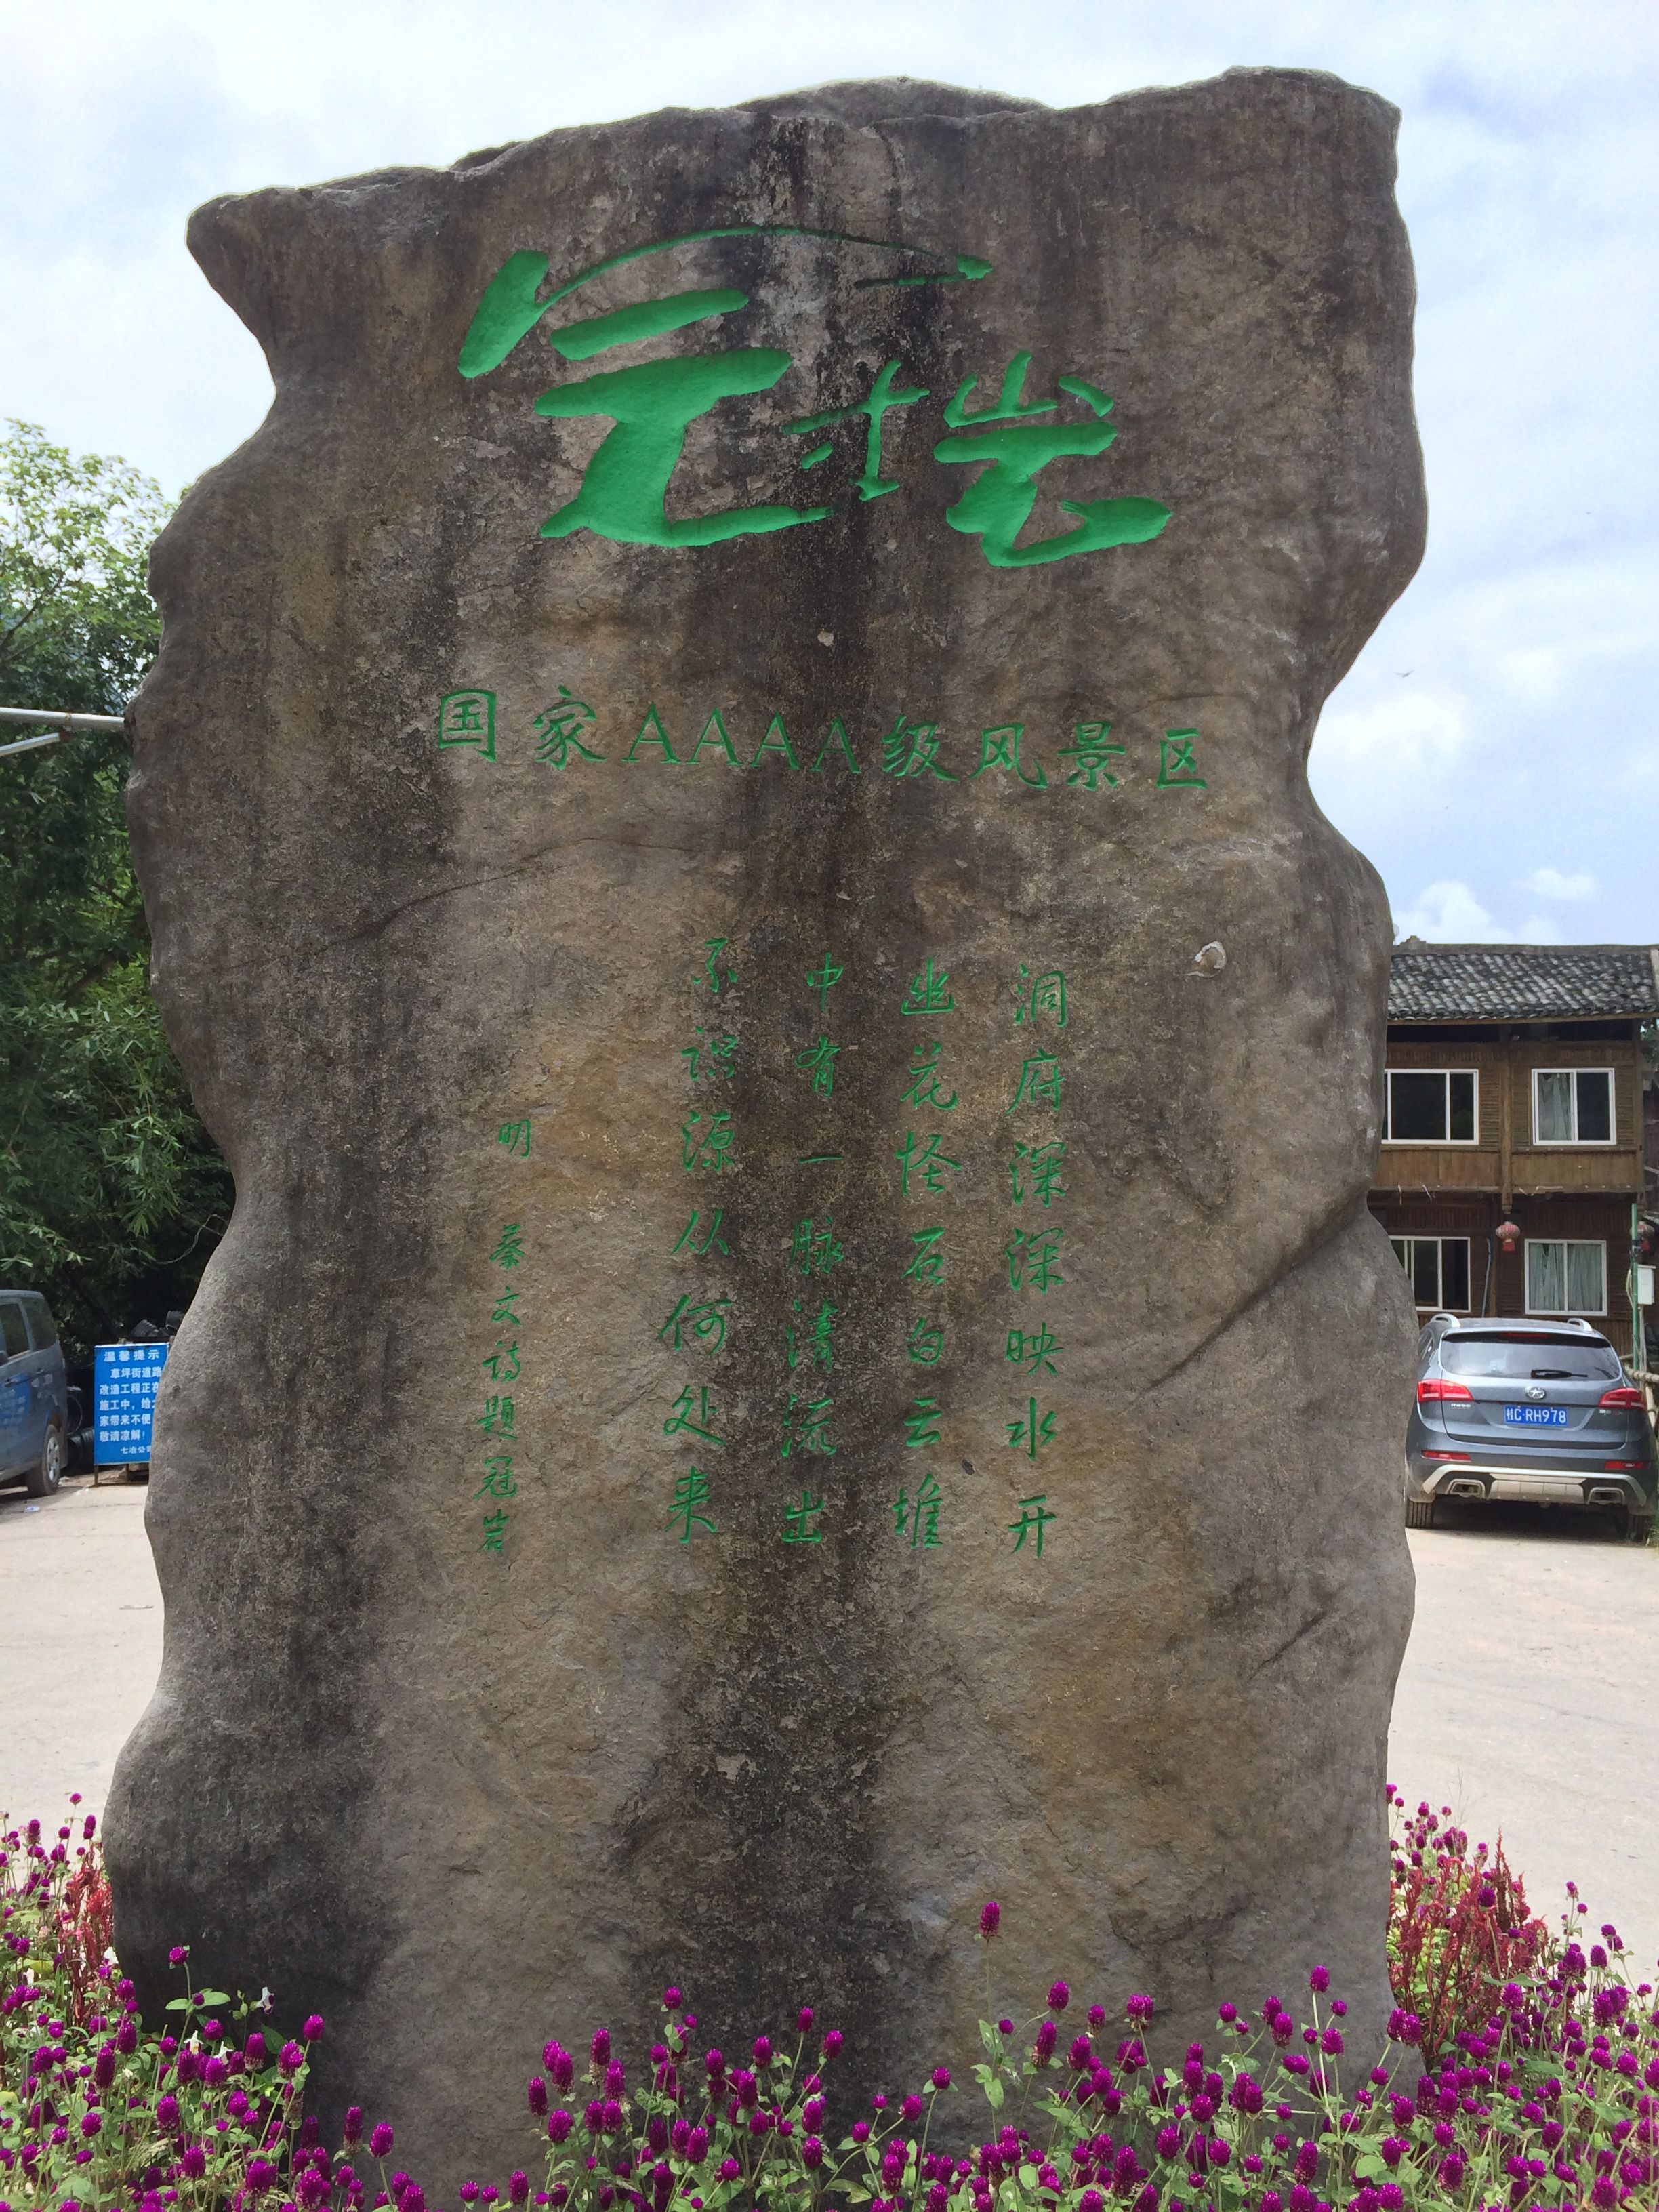 冠岩又名甘岩、光岩，位于漓江东岸的草坪乡，离桂林市区29公里，是一个巨型地下河溶洞，因山形似一古老的